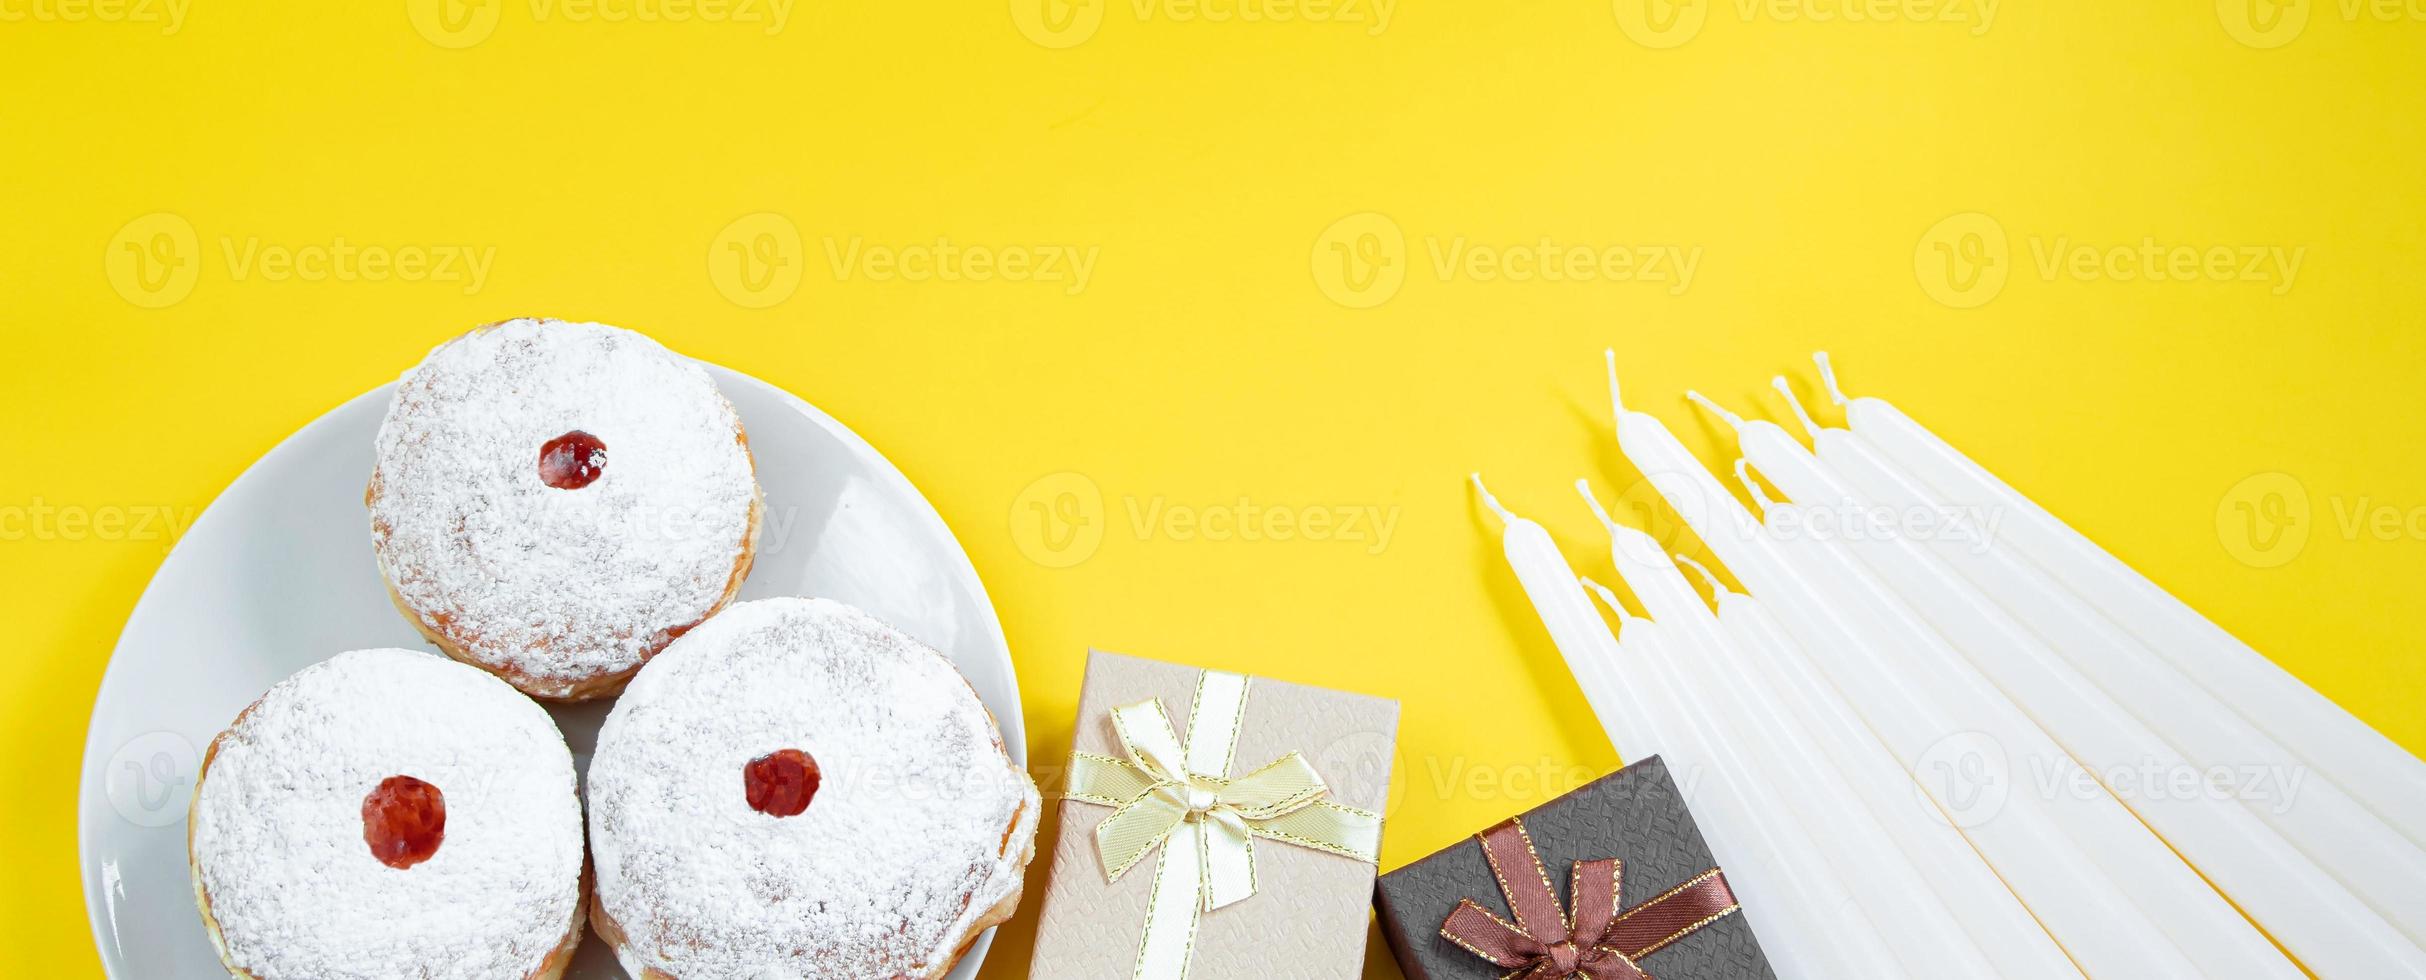 Fröhliches Hanukkah. jüdisches dessert sufganiyot auf gelbem hintergrund. symbole des religiösen judentums. Donuts, Kerzen und Geschenk. foto